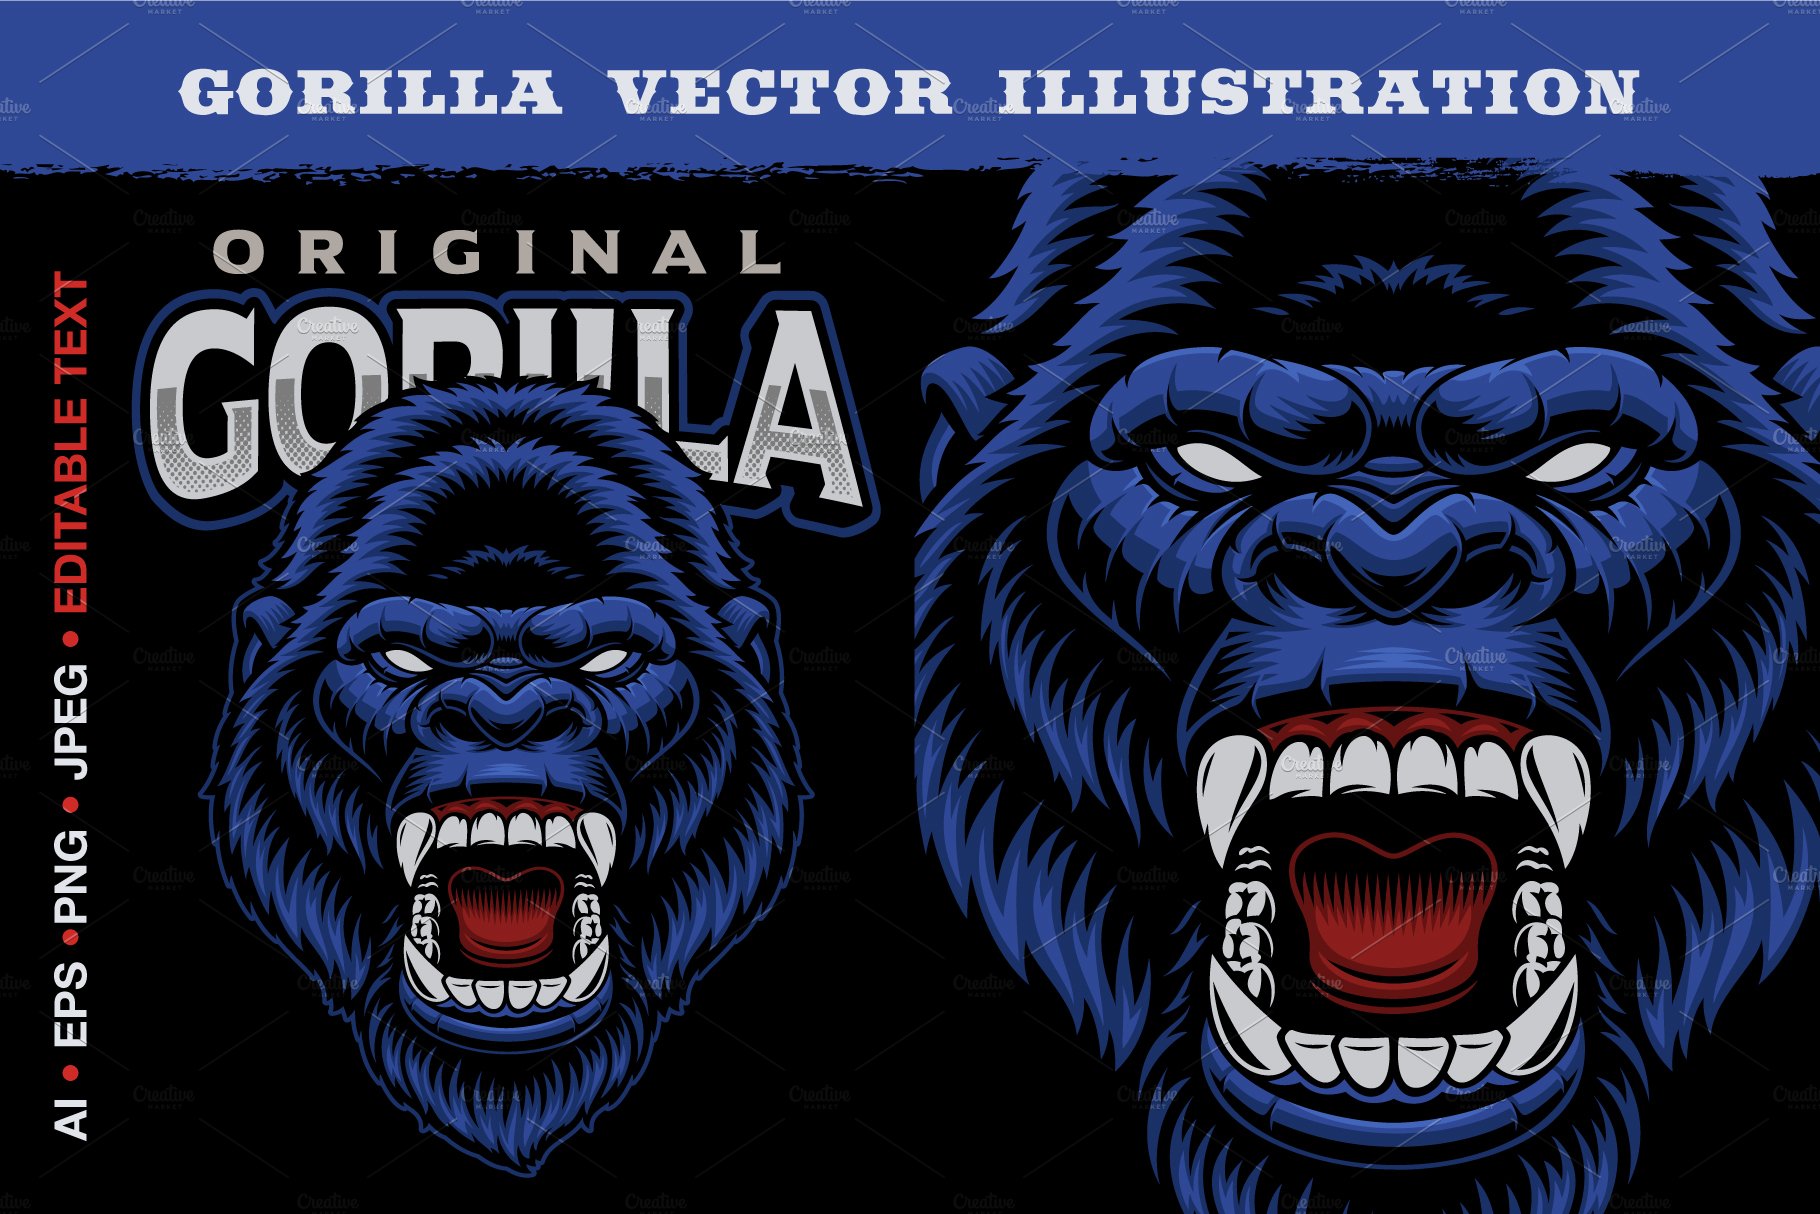 Gorilla Vector Illustration cover image.